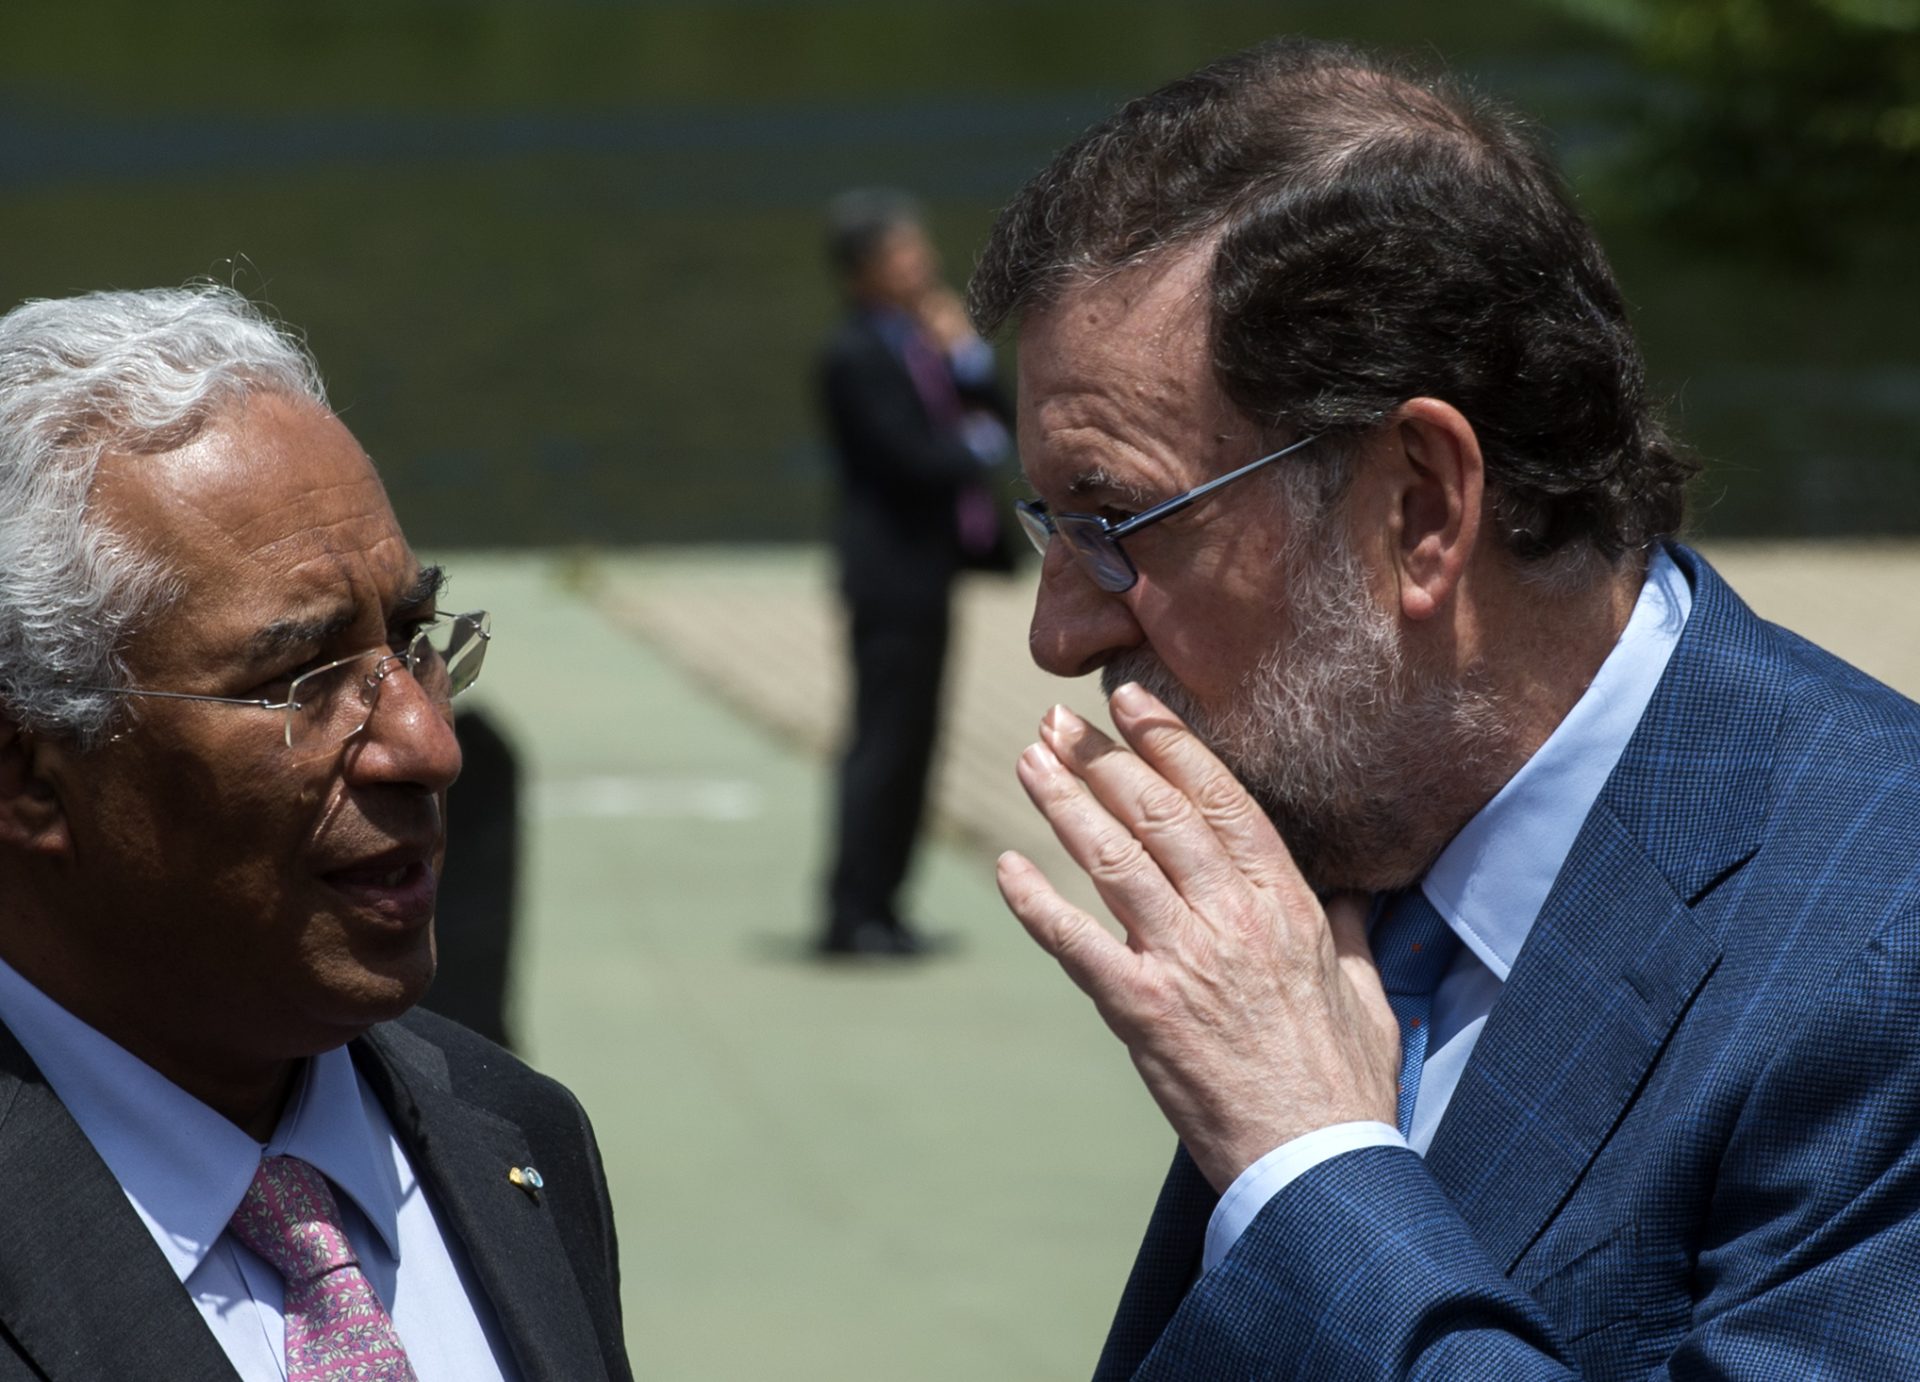 Cimeira Ibérica. Rede social twitter animou encontro bilateral entre Costa e Rajoy